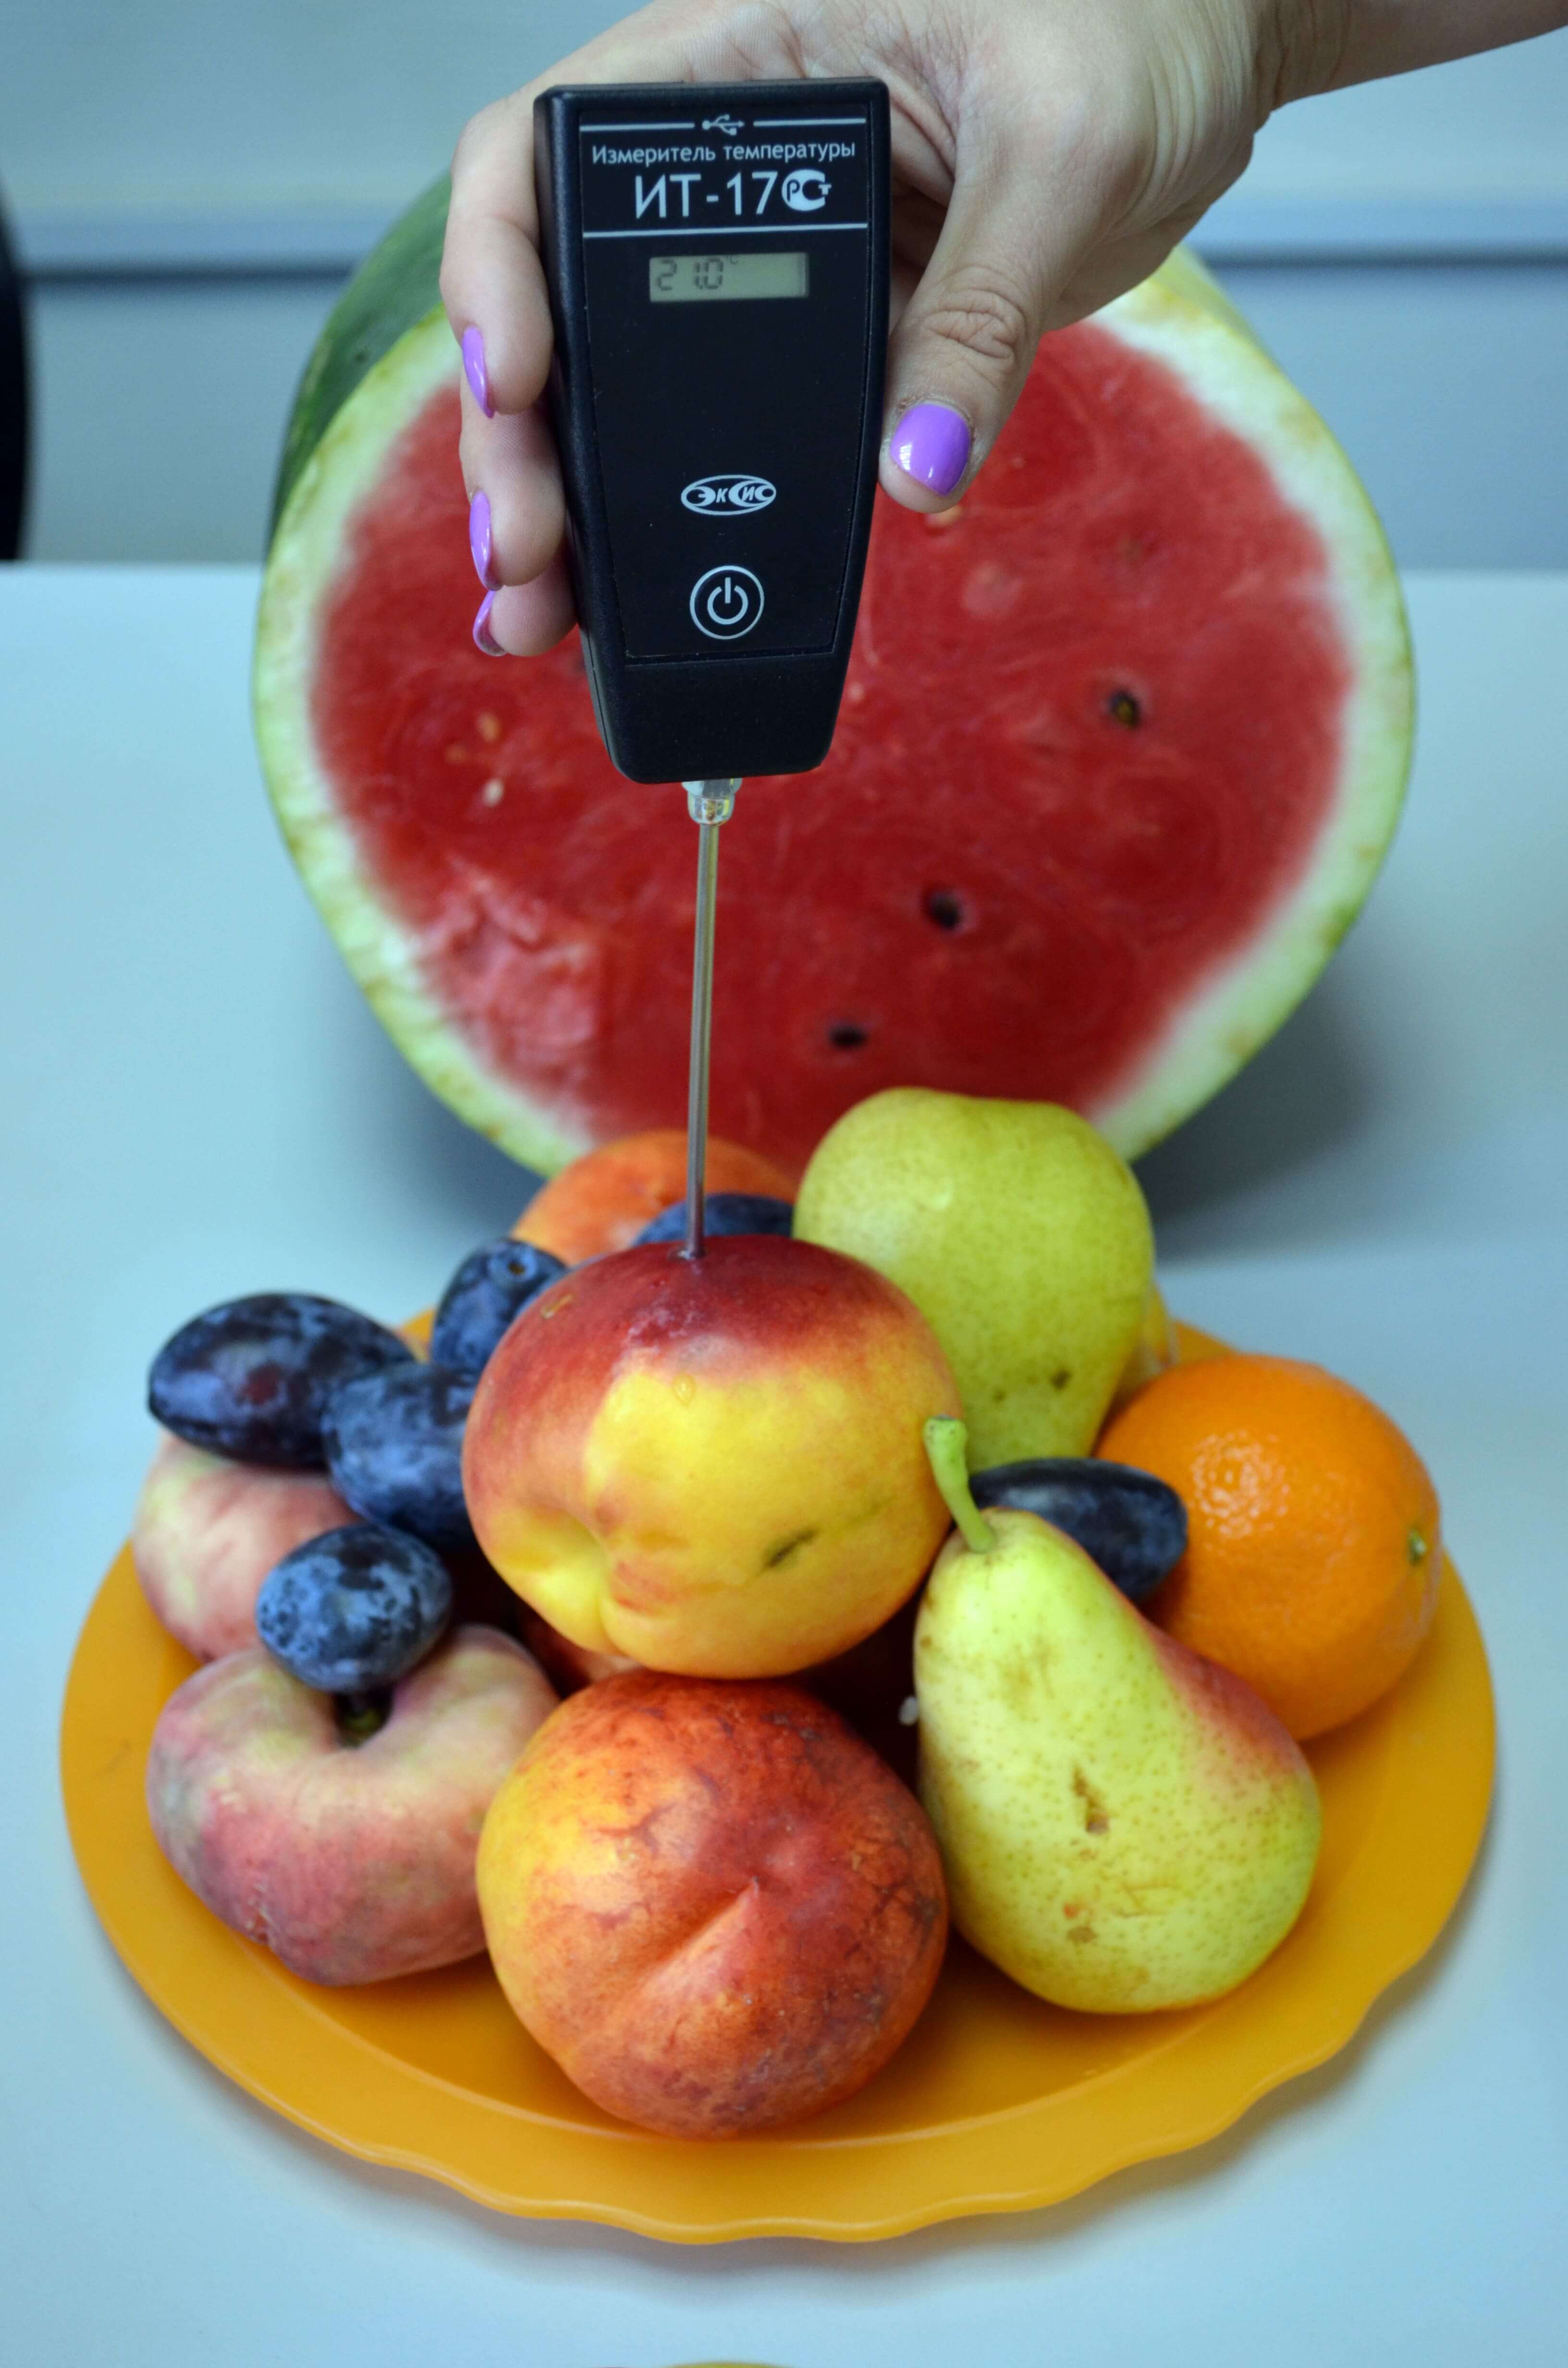 Измерение температуры в фруктах с помощью ИТ-17